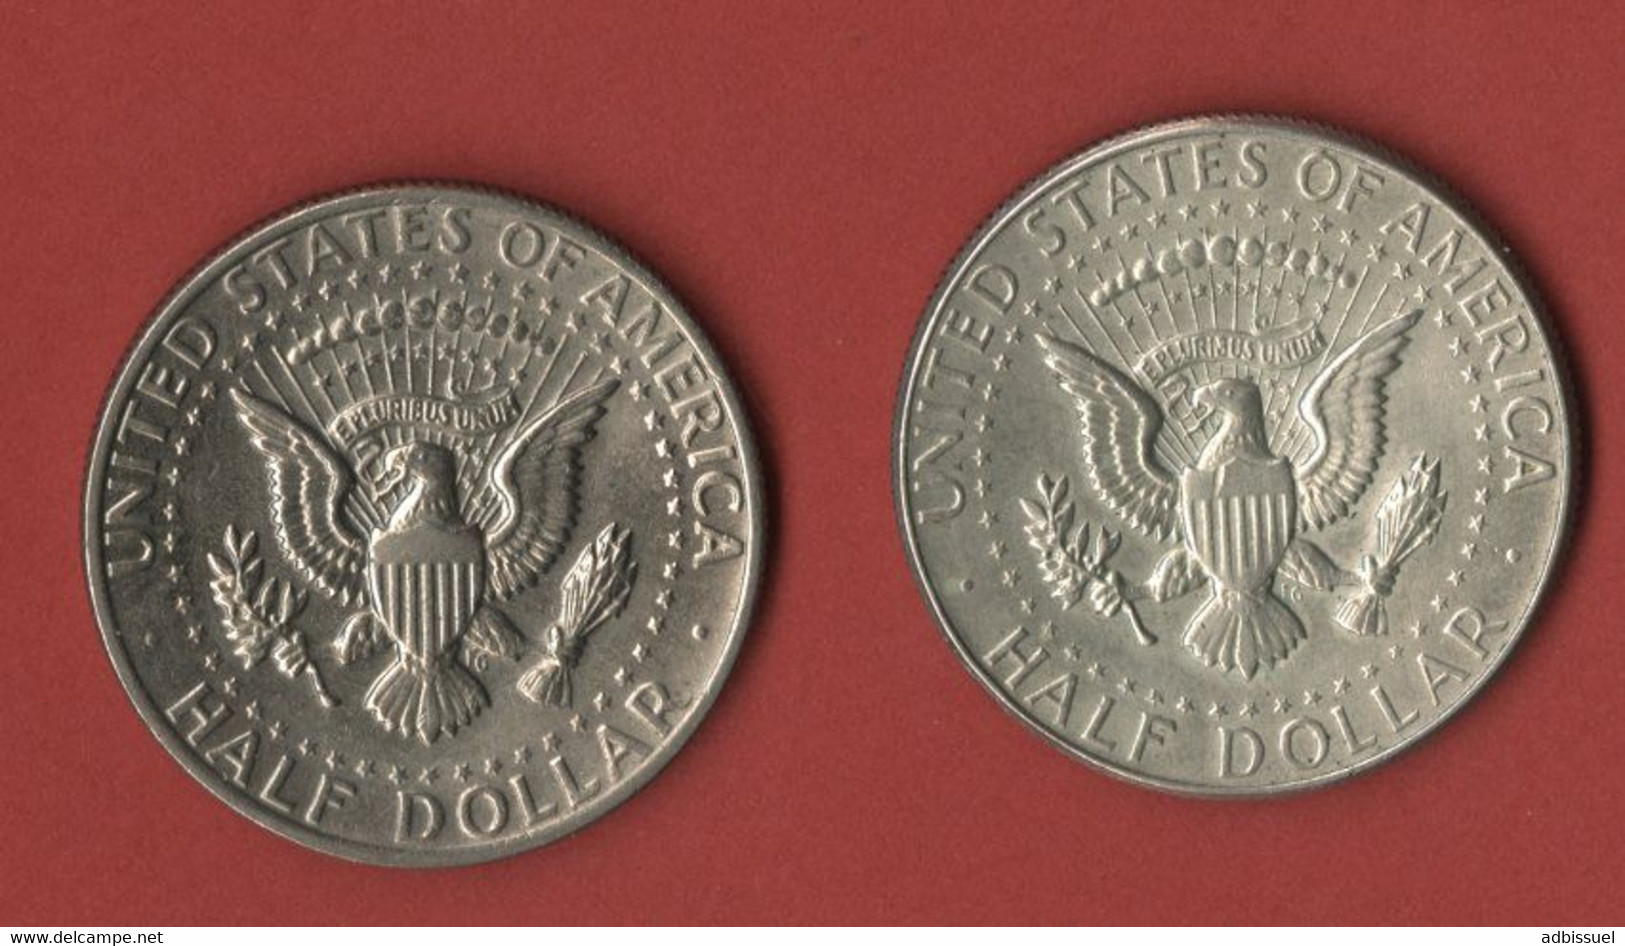 1/2 DOLLAR KENNEDY 1967 + 1/2 DOLLAR KENNEDY 1974 (voir Description) - 1964-…: Kennedy